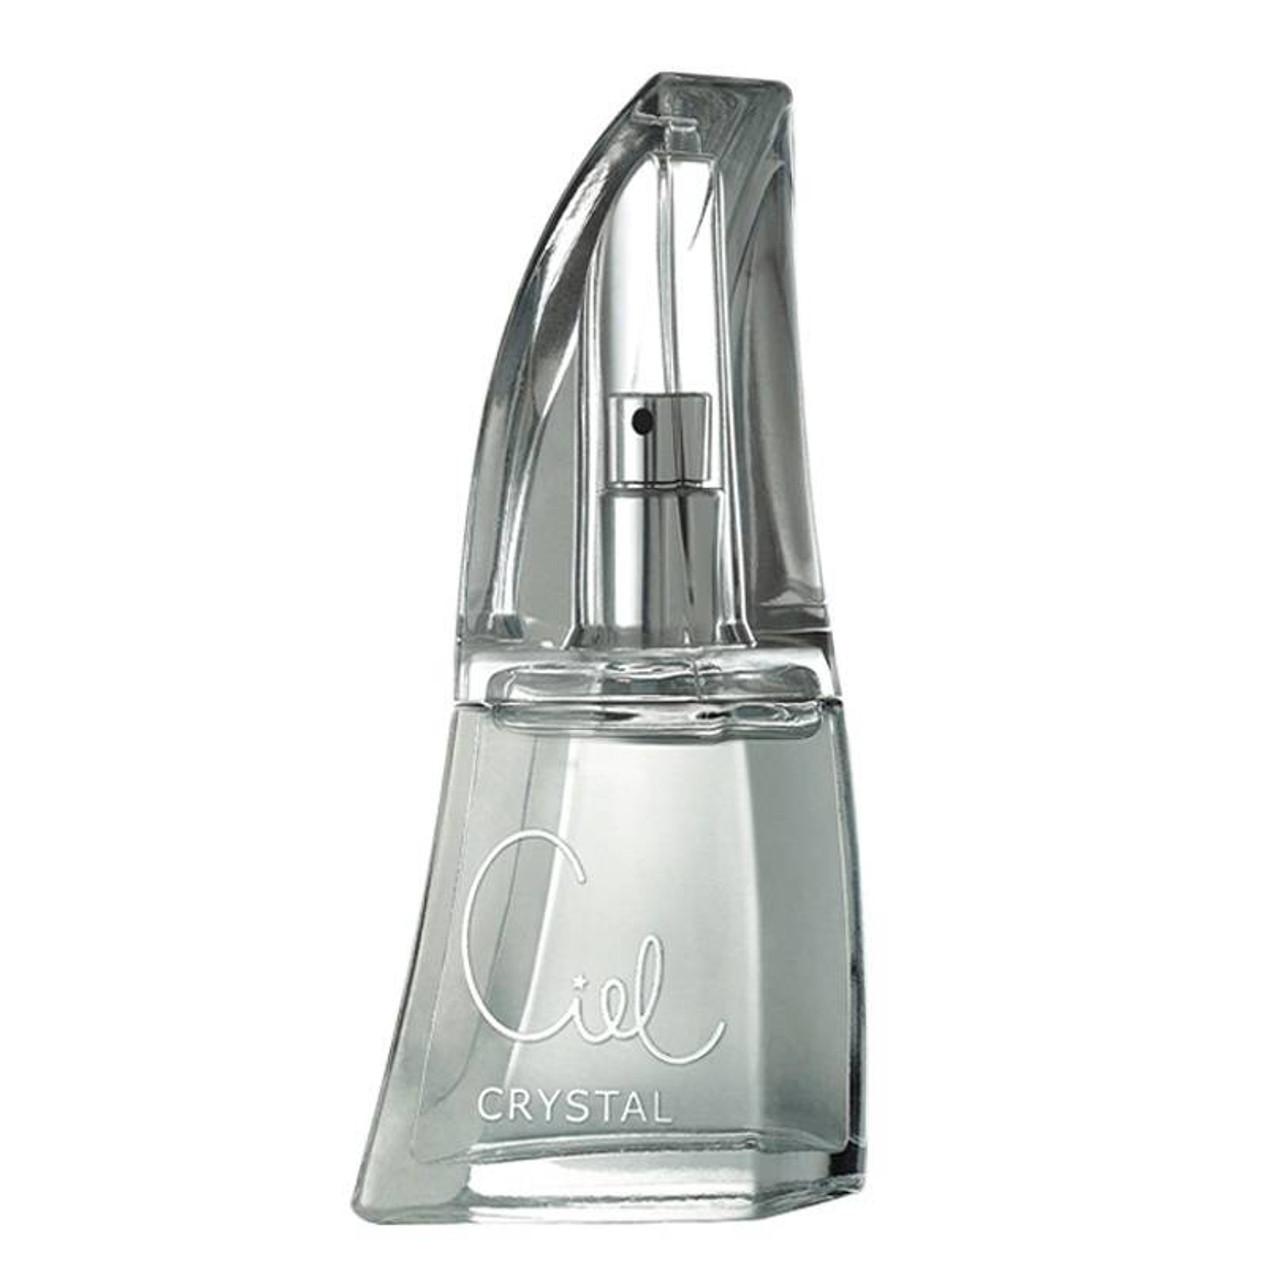 Versace Women's Bright Crystal Edt Spray - 6.7 fl oz bottle